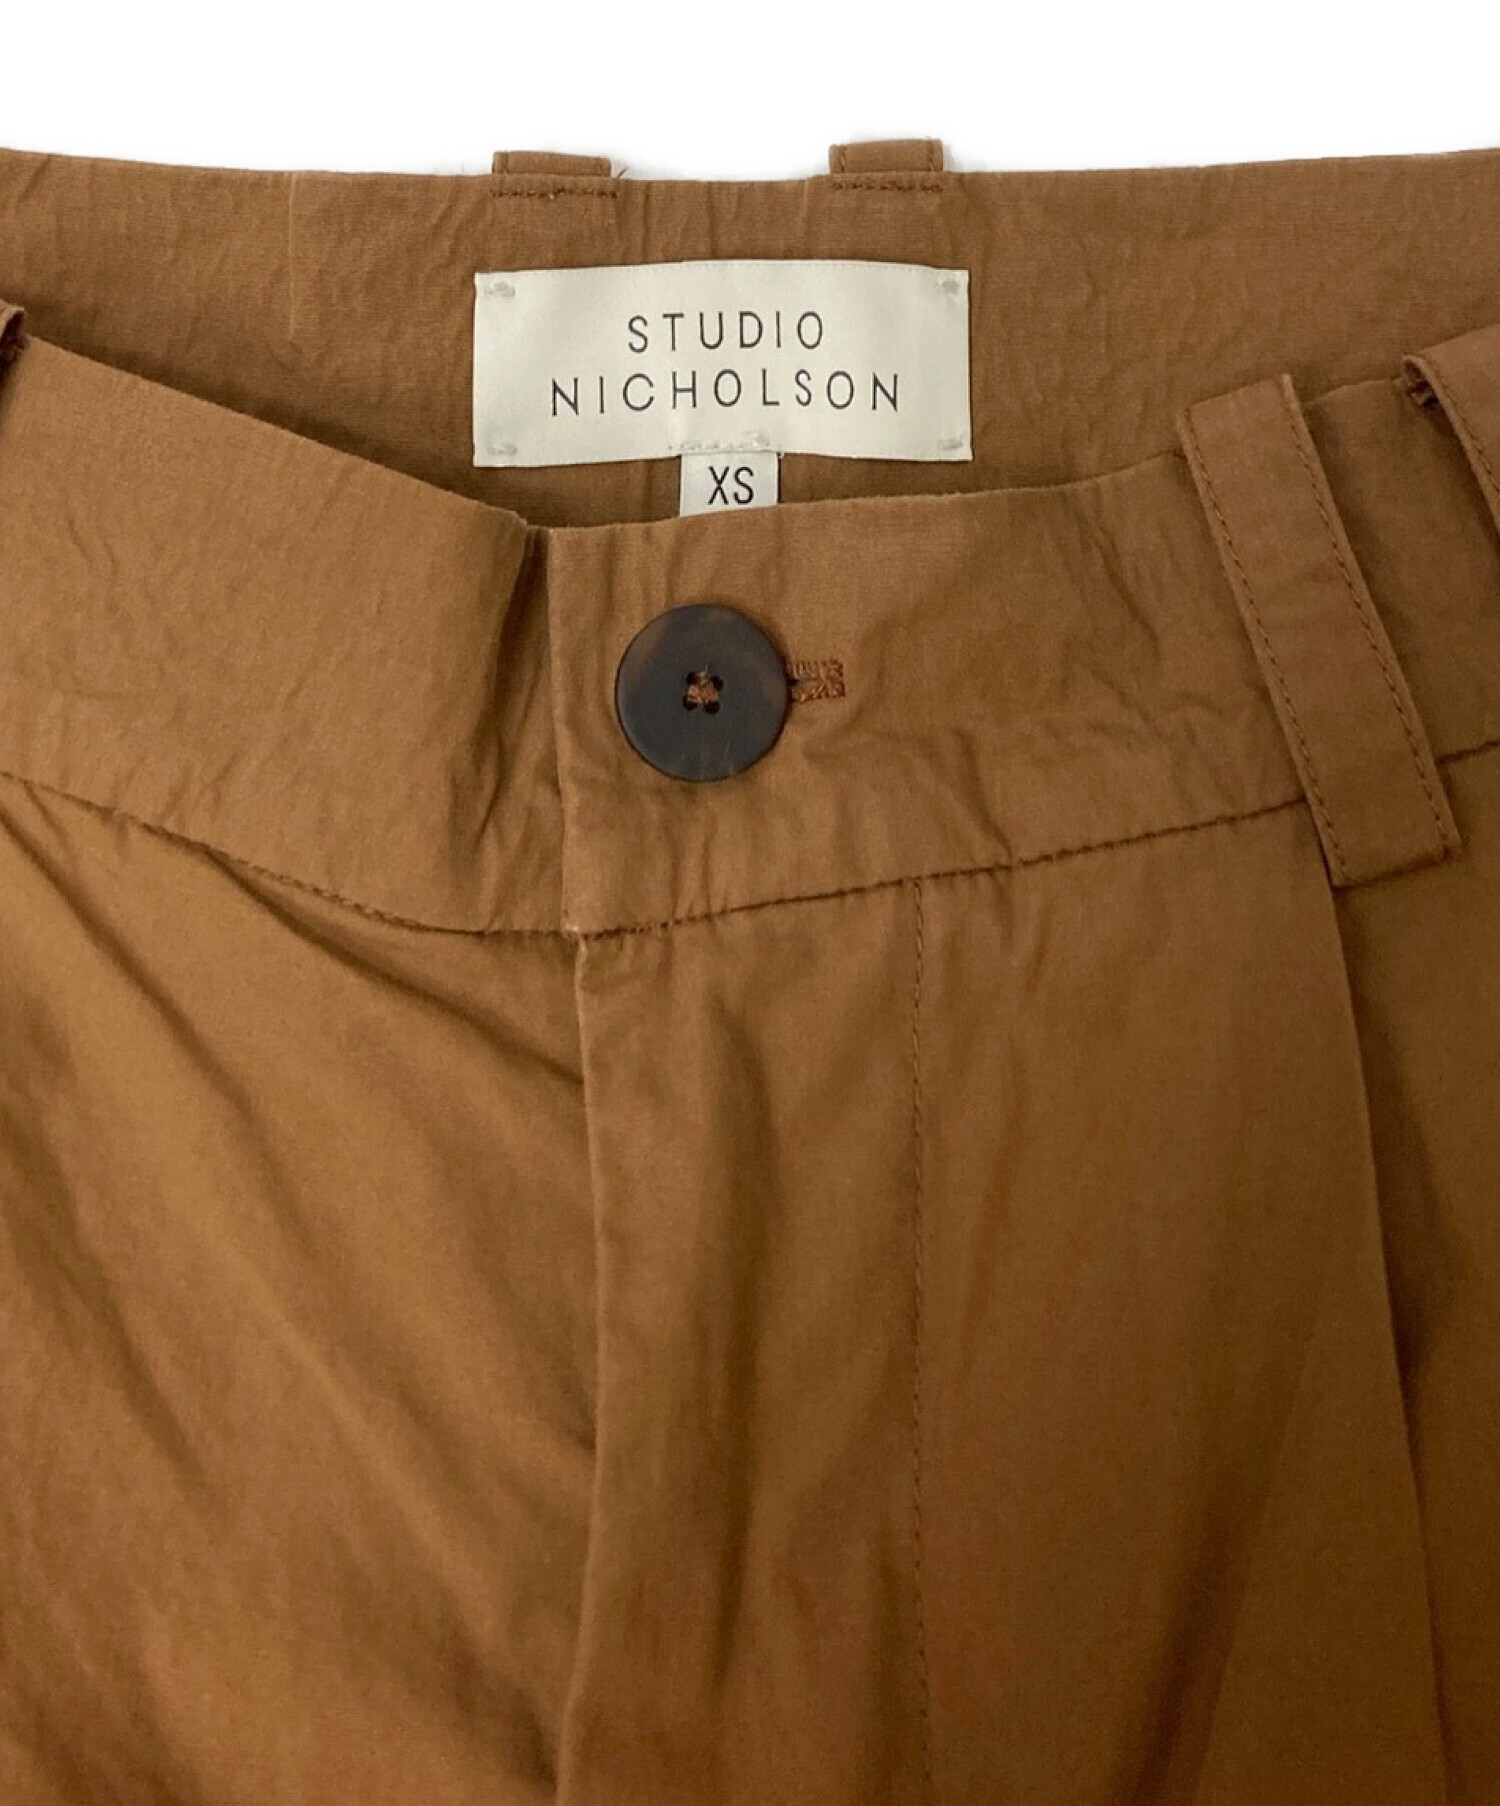 STUDIO NICHOLSON (スタジオニコルソン) 2タックワイドパンツ ブラウン サイズ:XS